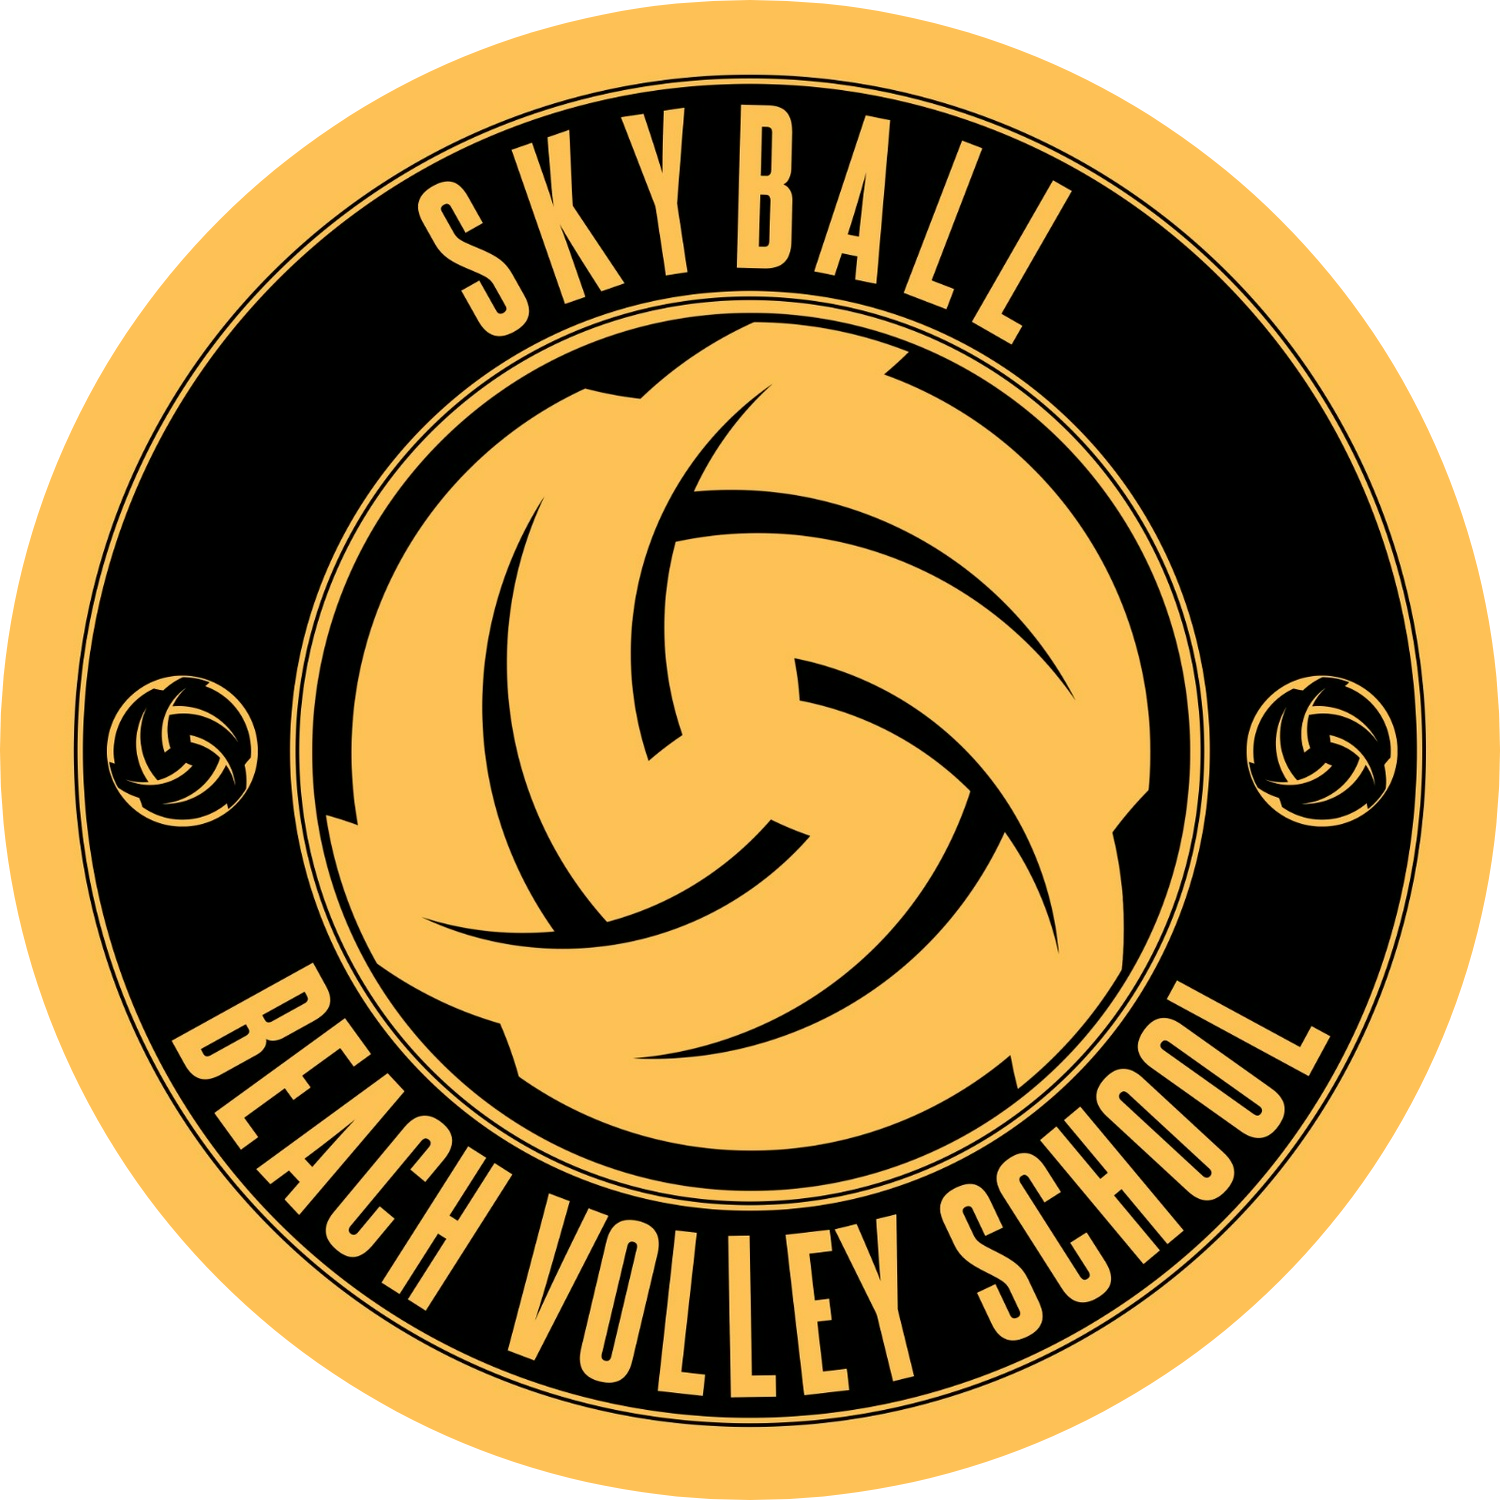 Skyball BV School